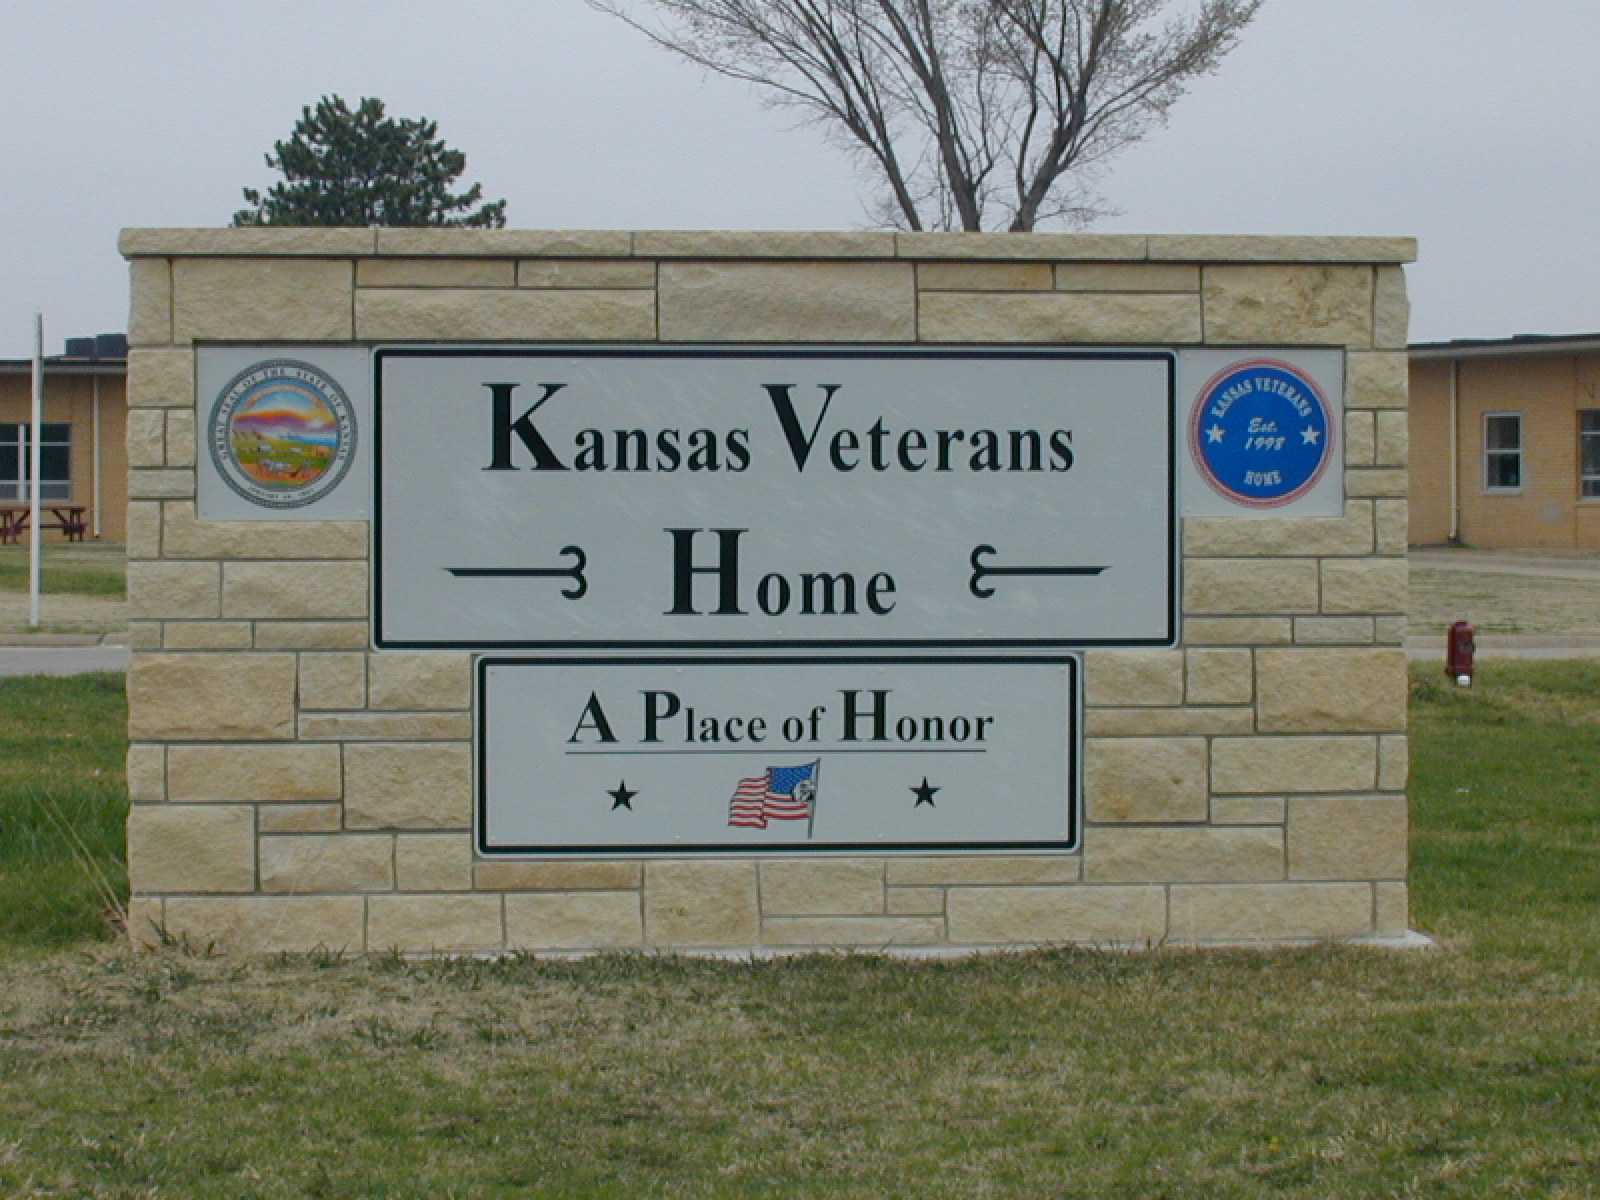 Kansas Veterans Home